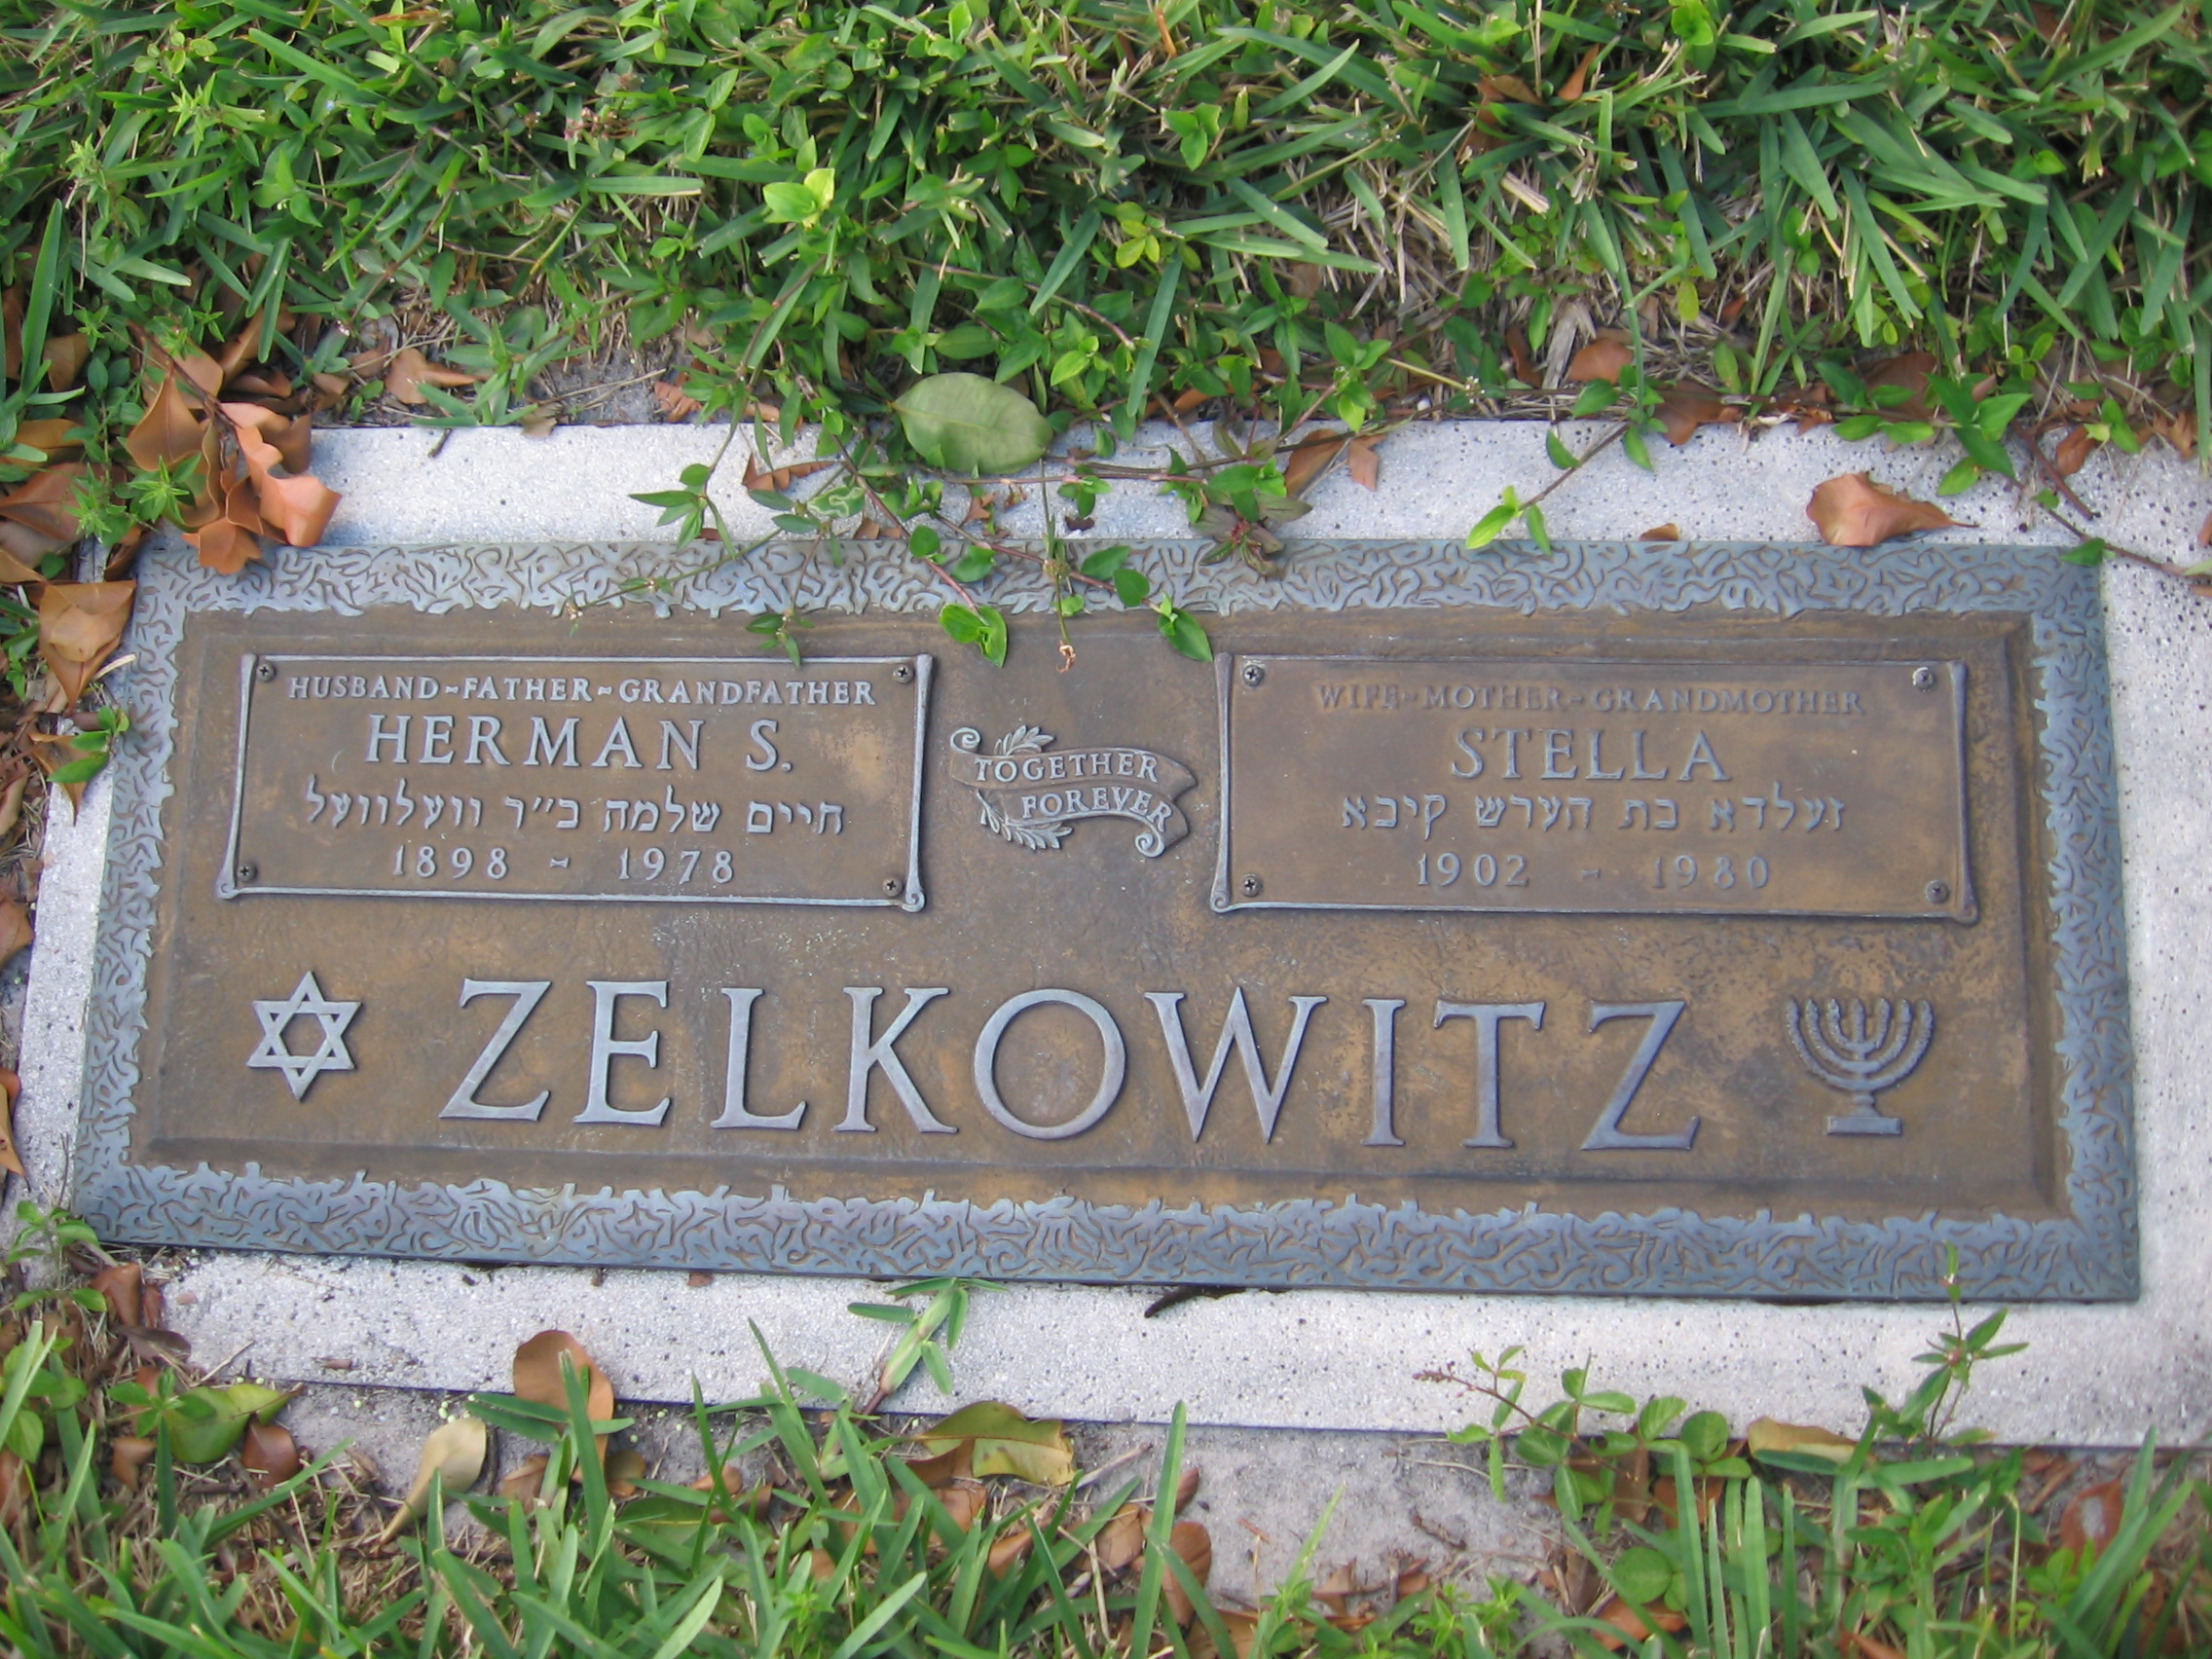 Herman S Zelkowitz